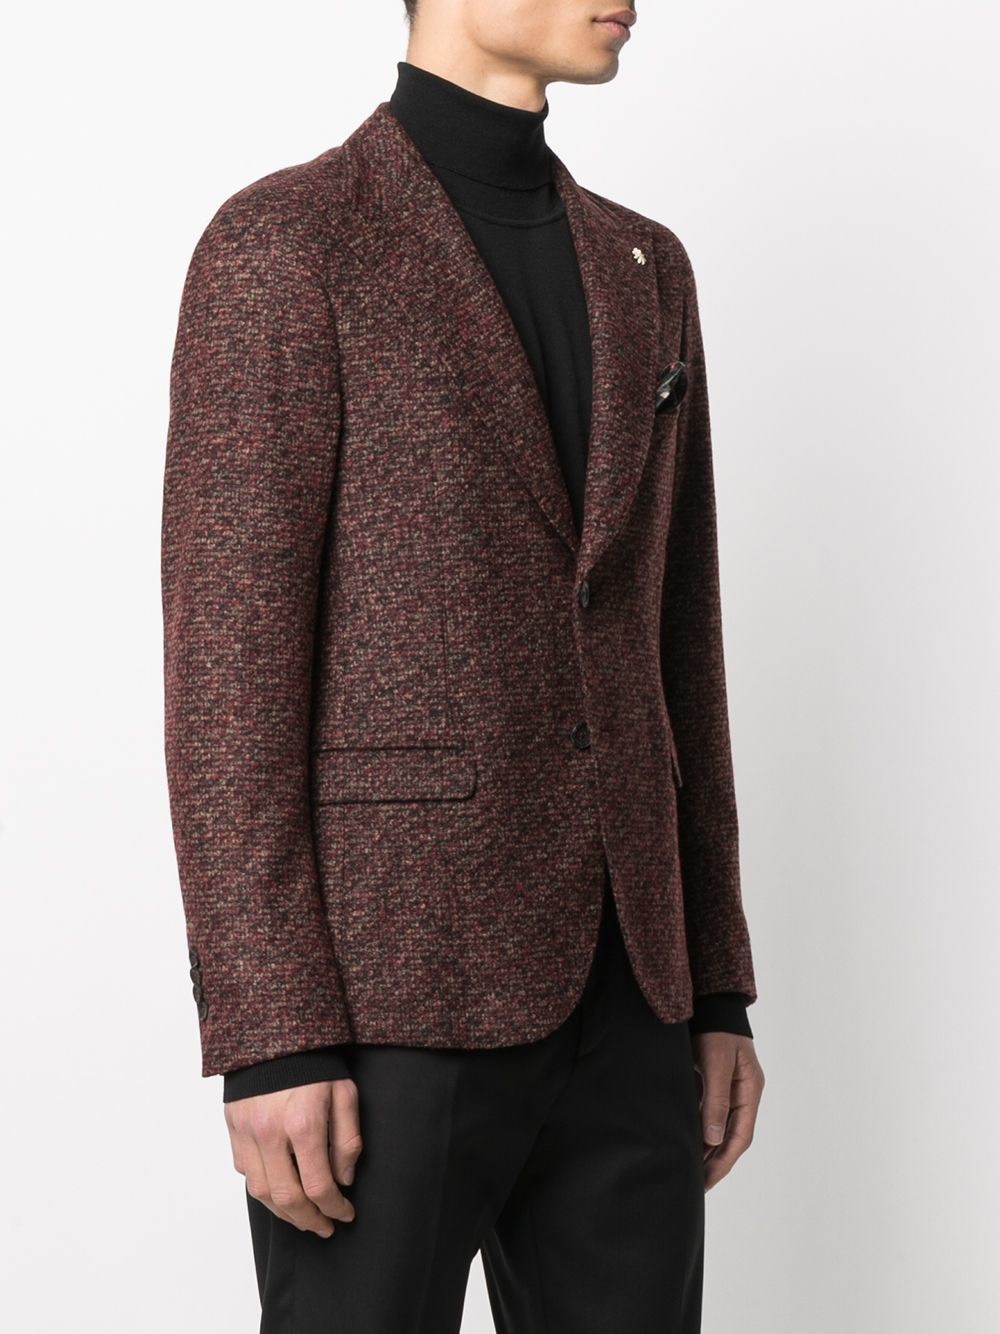 Manuel Ritz Single Breasted Tweed Jacket, $515 | farfetch.com | Lookastic